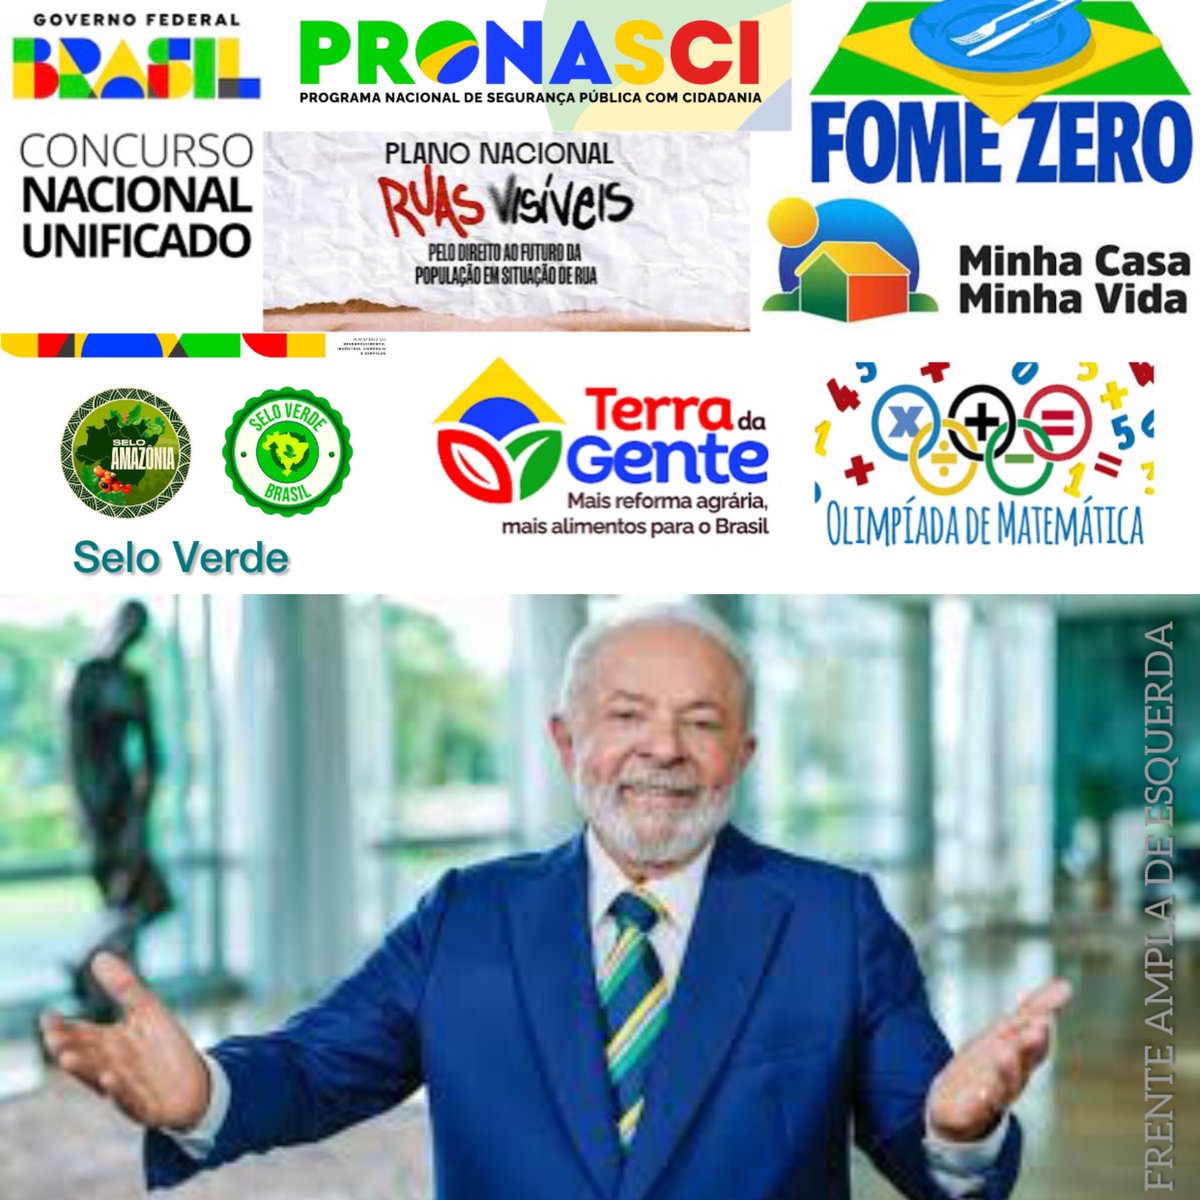 Desde 2003, quando assumiu a presidência pela 1ª vez, LULA acumulou mais de 300 prêmios e honrarias. Em 2008, Lula foi considerado uma das pessoas mais poderosas do mundo. Em 2010, LULA deixou o governo com 87% de aprovação popular. LULA tem legado e tem história! CHUVA DE LULA